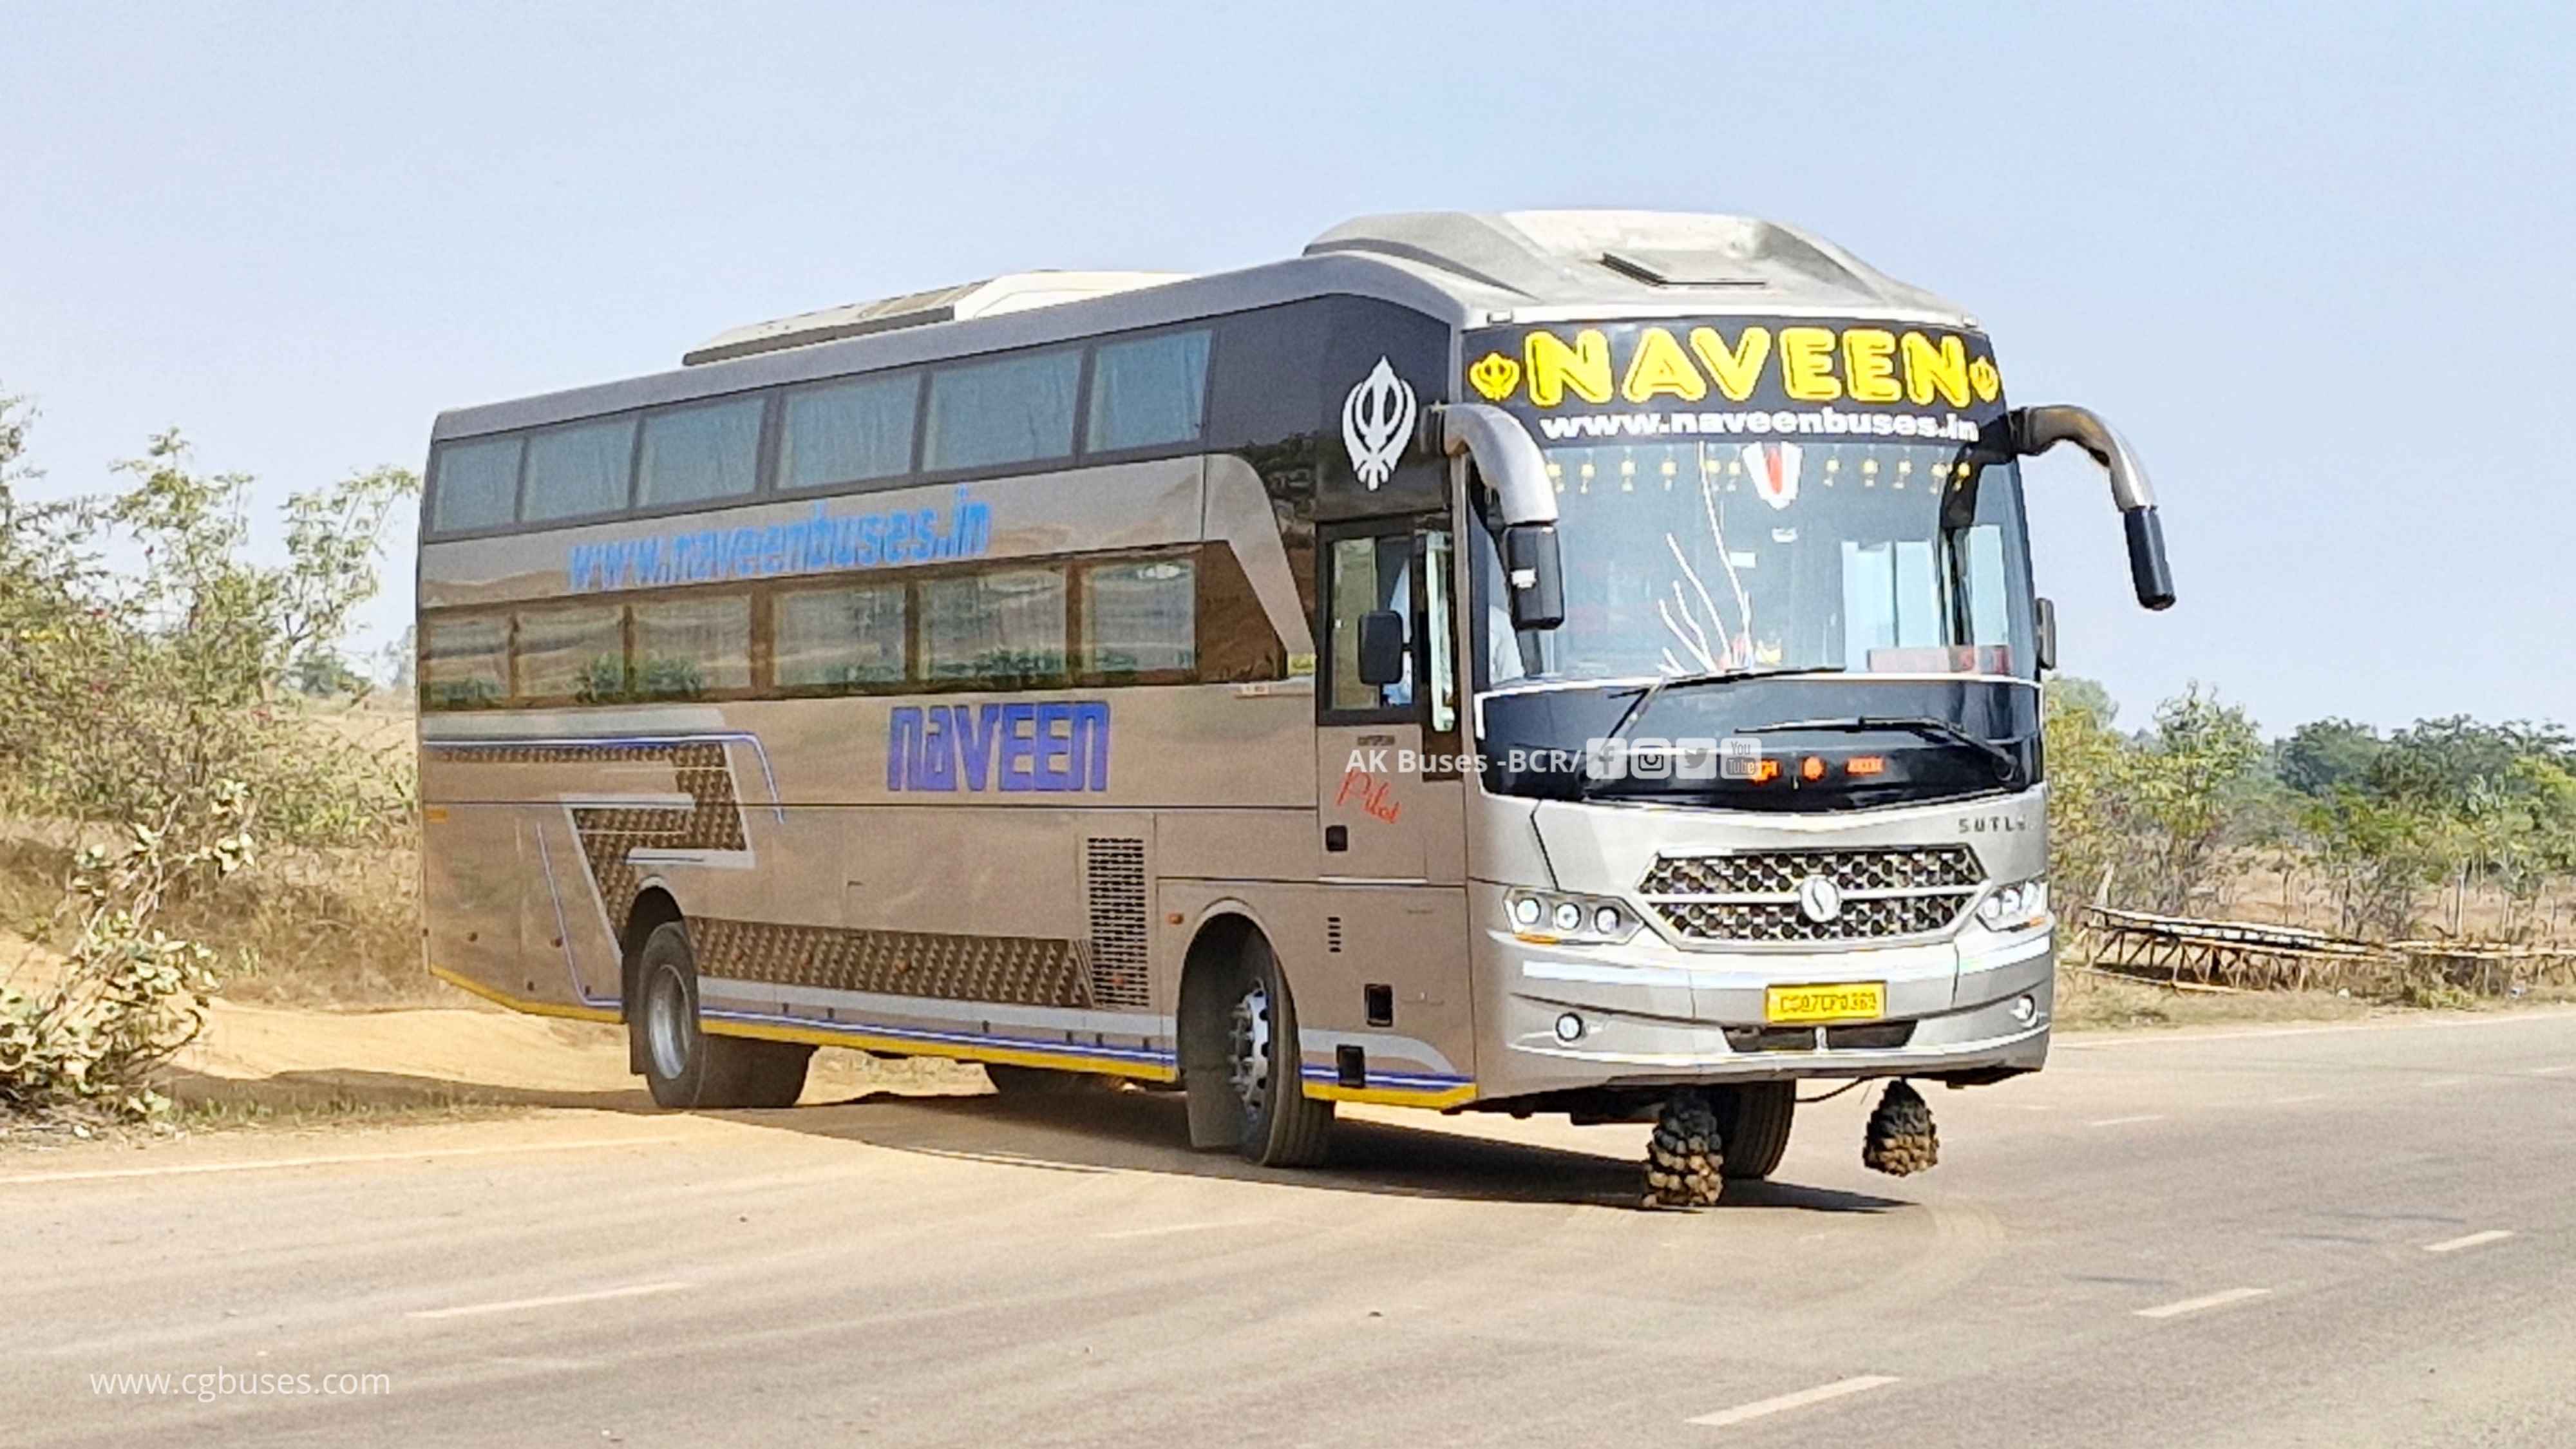 naveen travels sotlej s 1800 bus